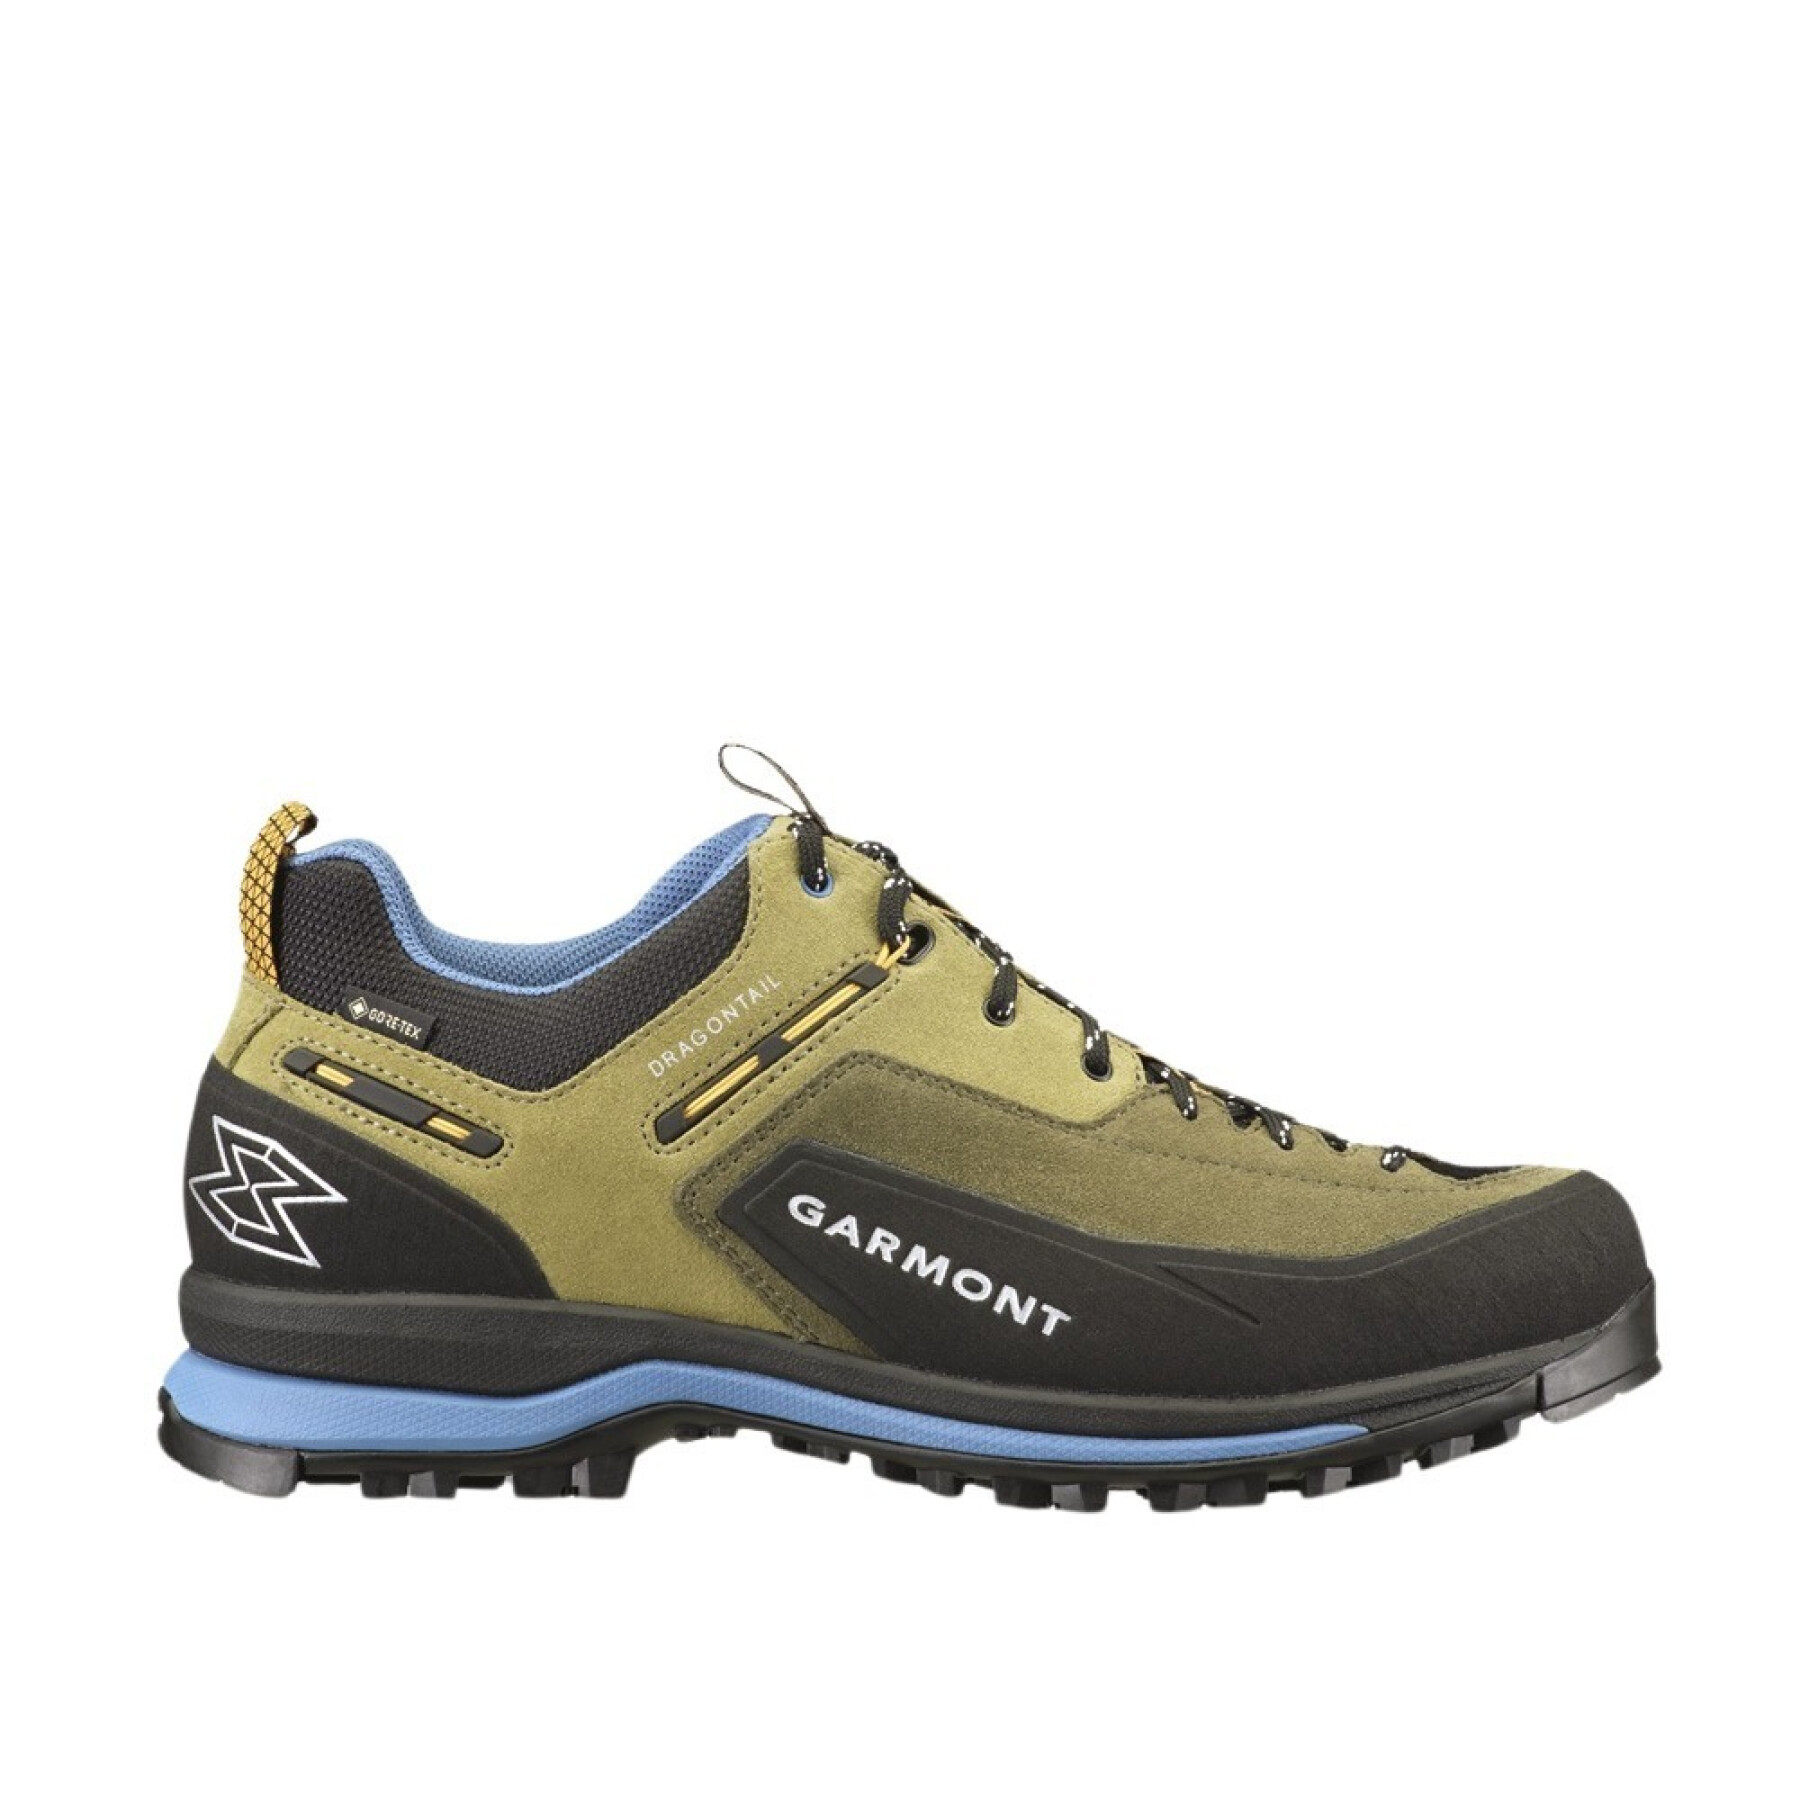 Hiking shoes Garmont Dragontail Tech Gtx